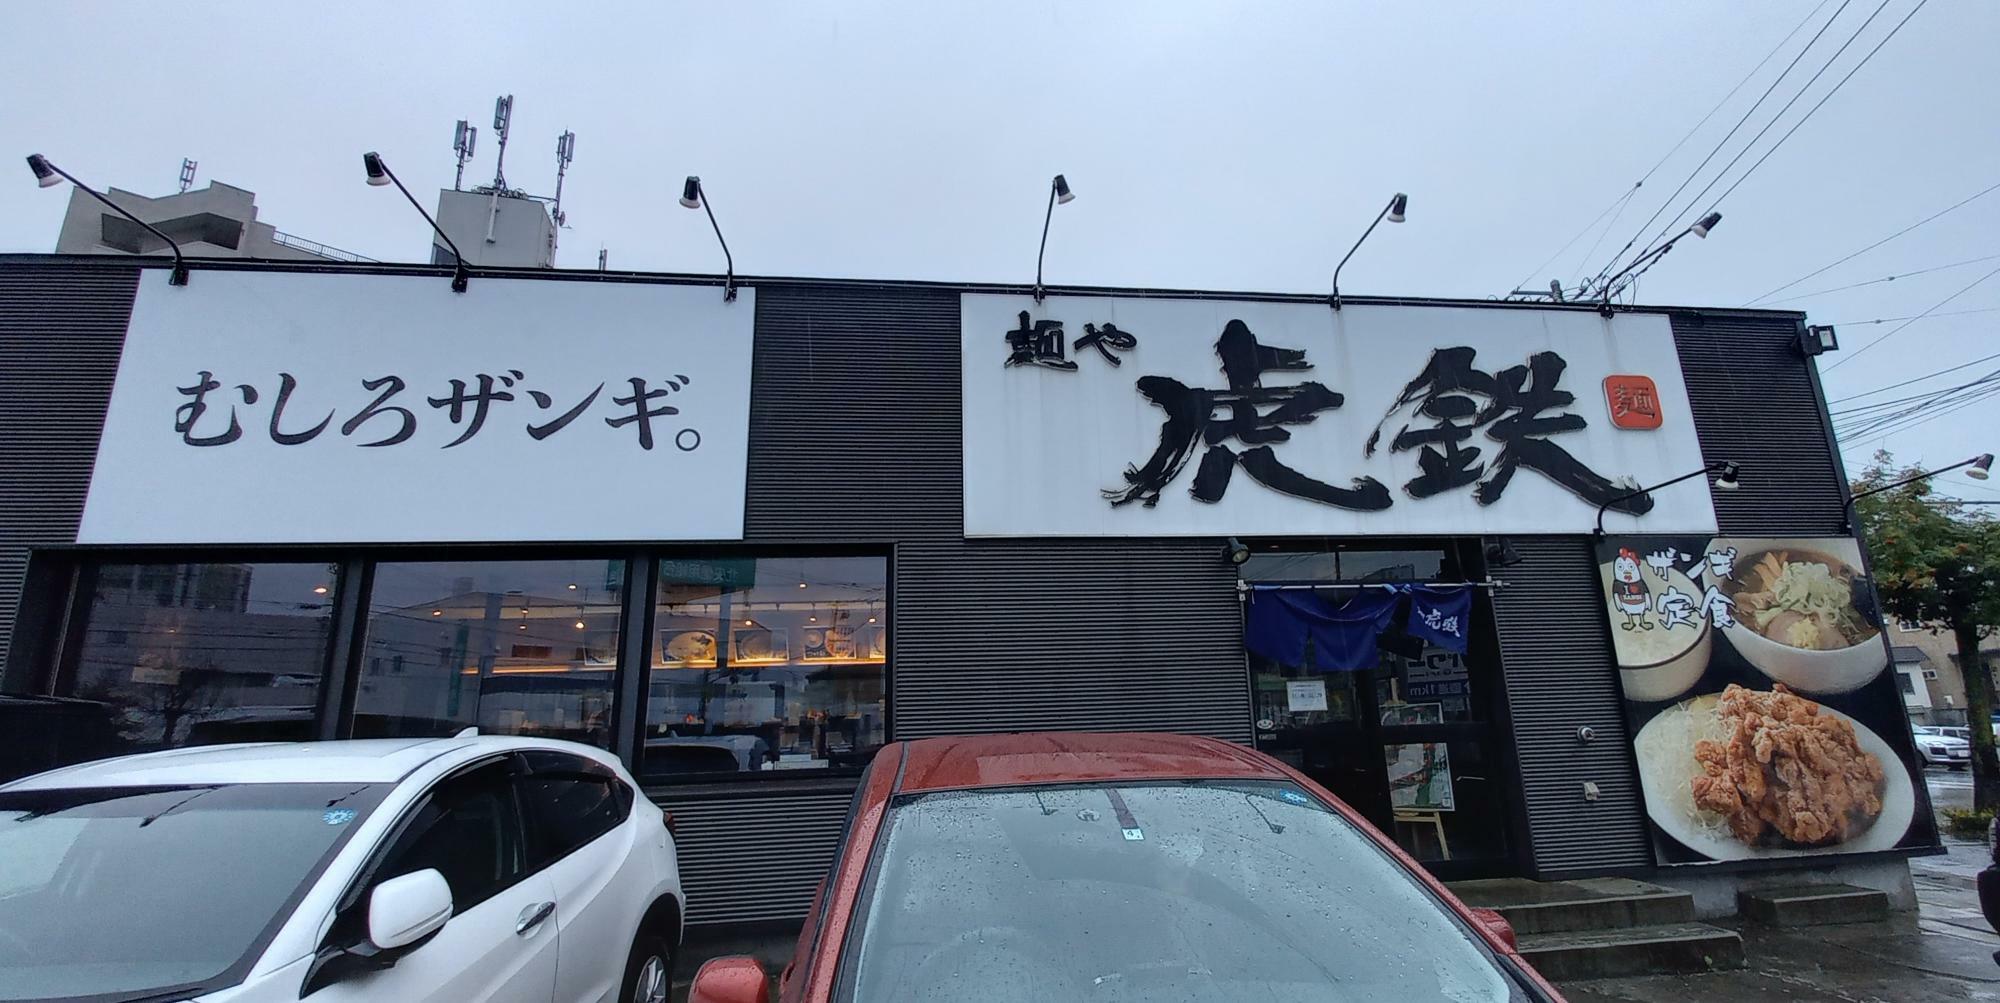 清田店は、お店の看板左側に「むしろザンギ。」